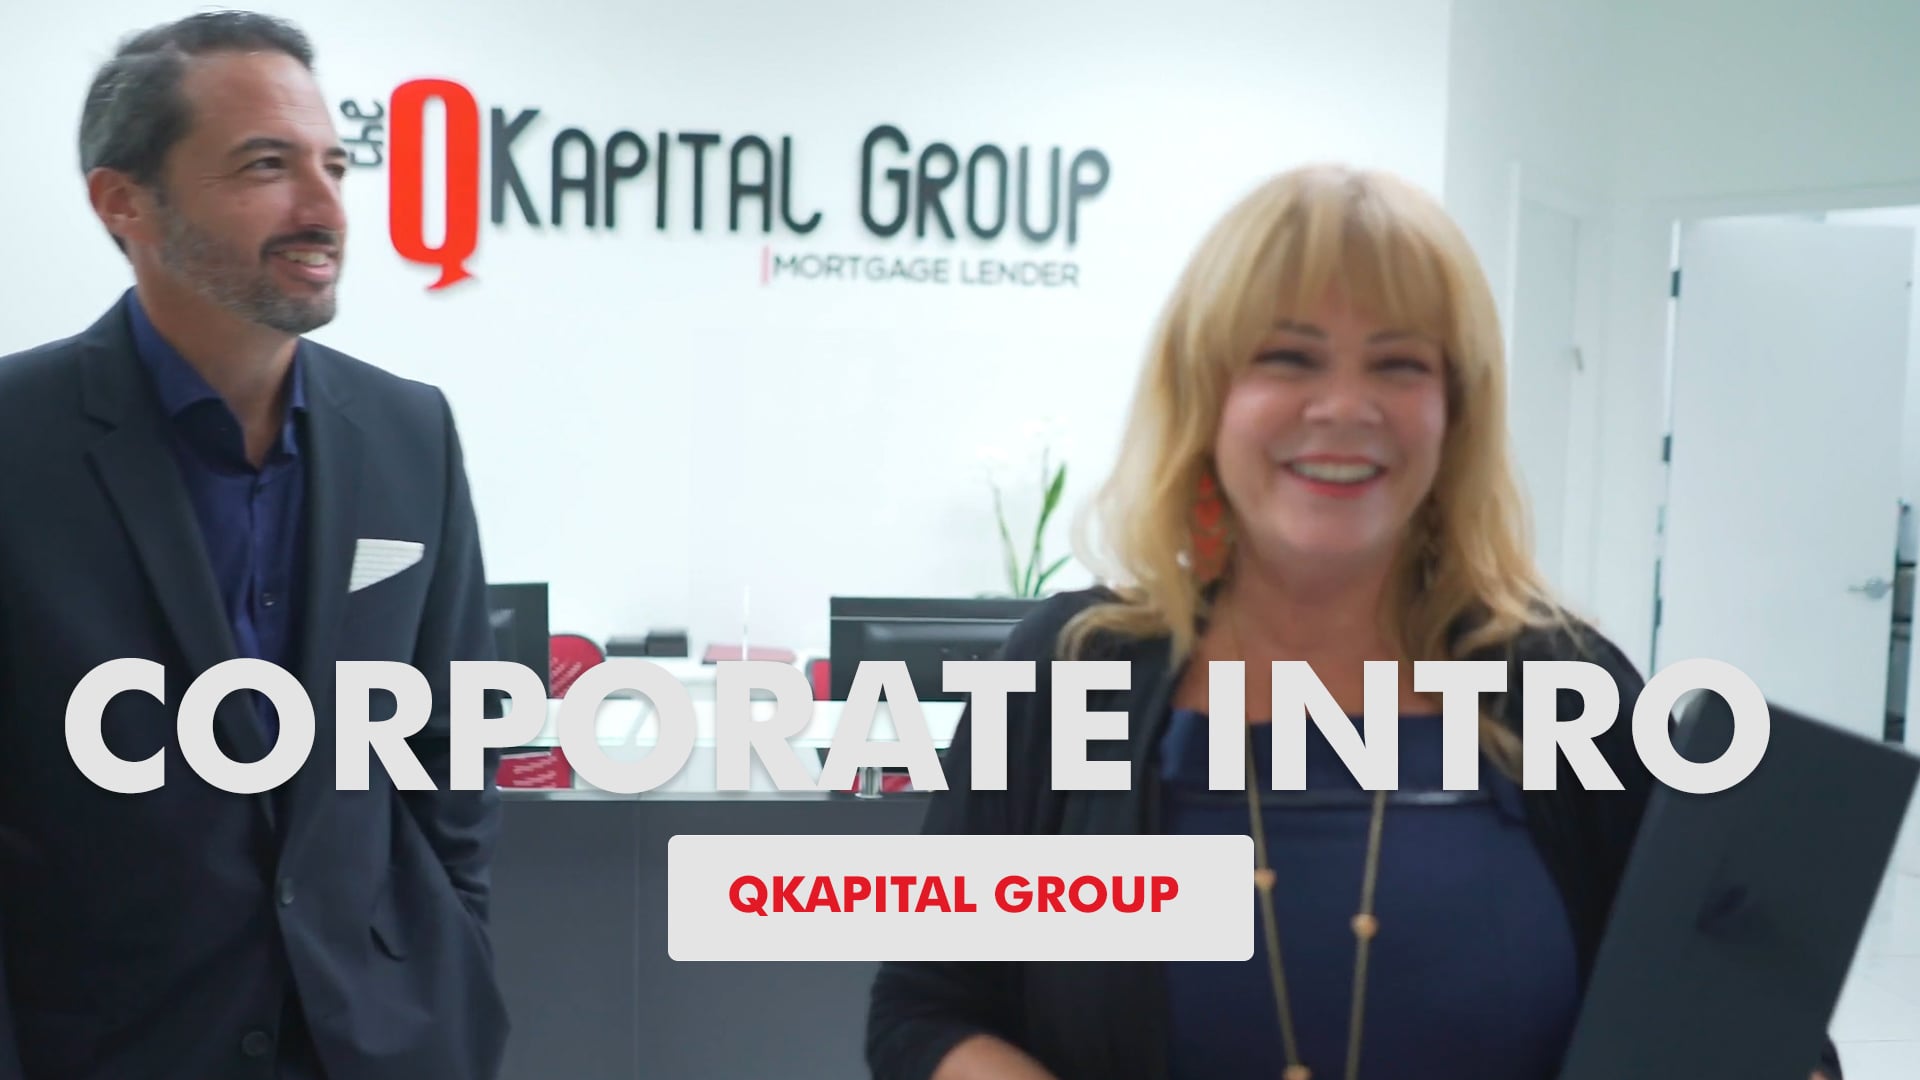 QKapital Corporate Intro Video (English Version)